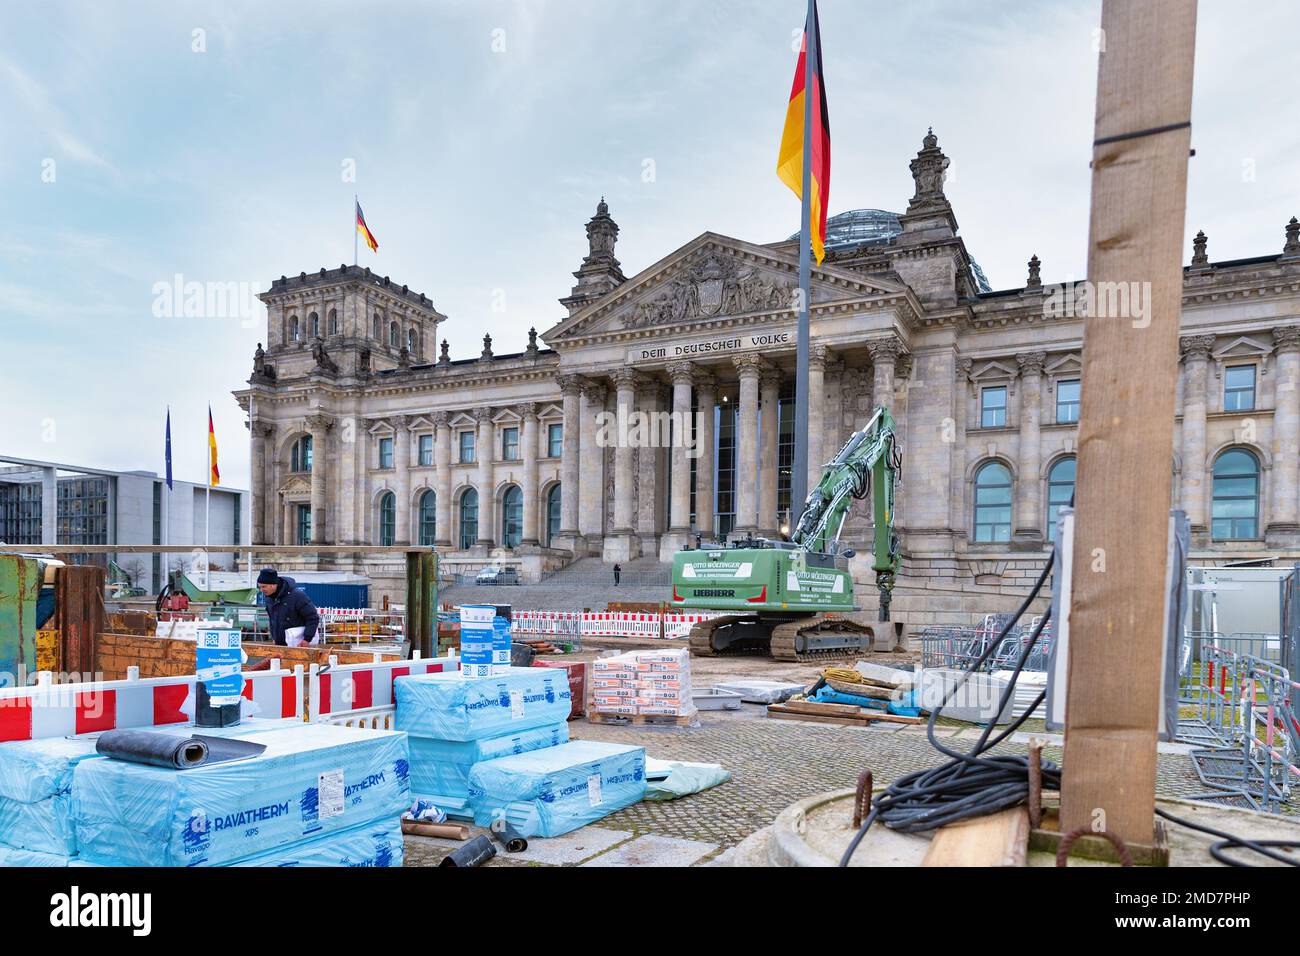 Les travaux de rénovation en face du bâtiment du Bundestag. Le Parlement fédéral allemand. Сonstruction équipement à Berlin. Banque D'Images